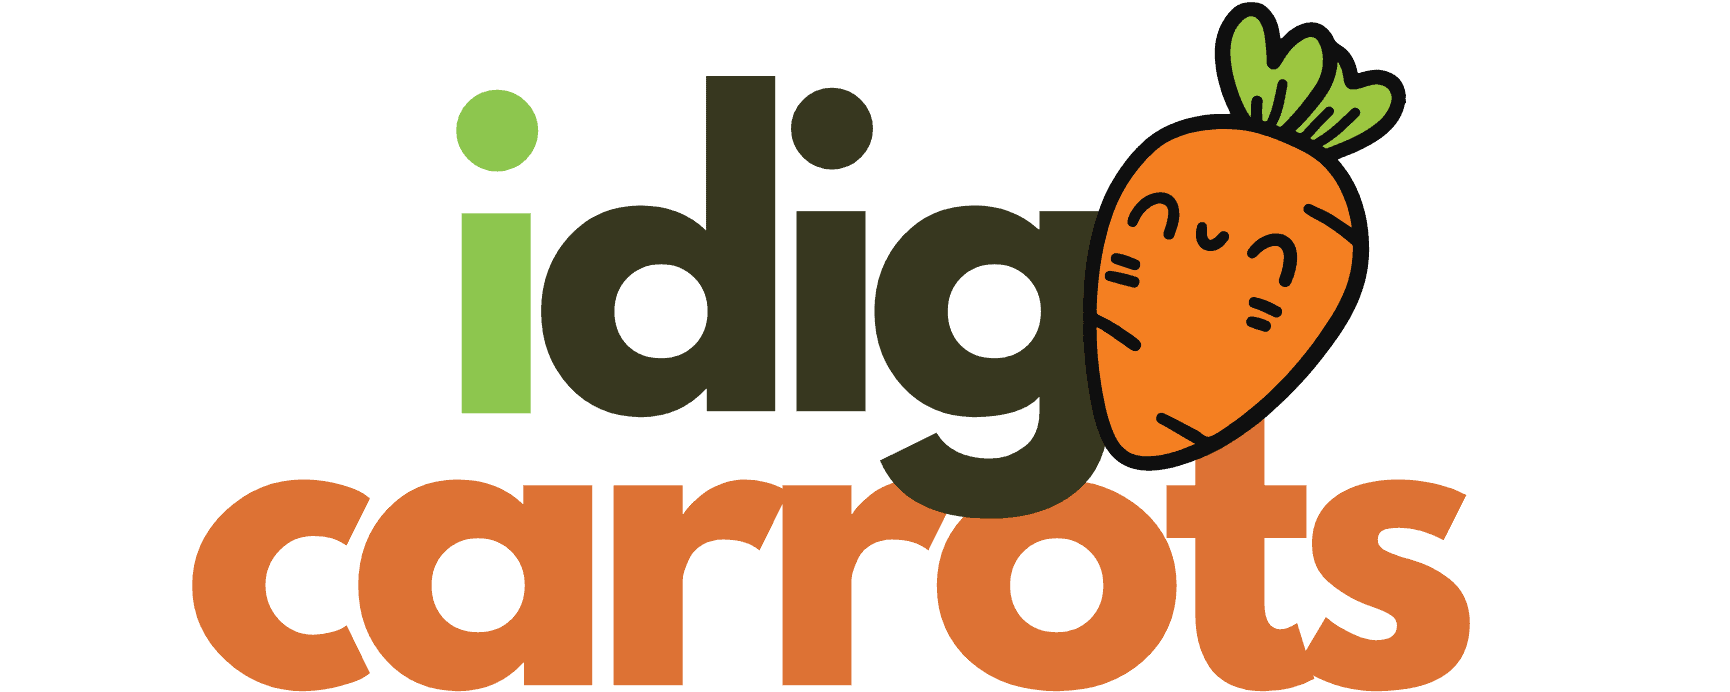 I dig carrots logo